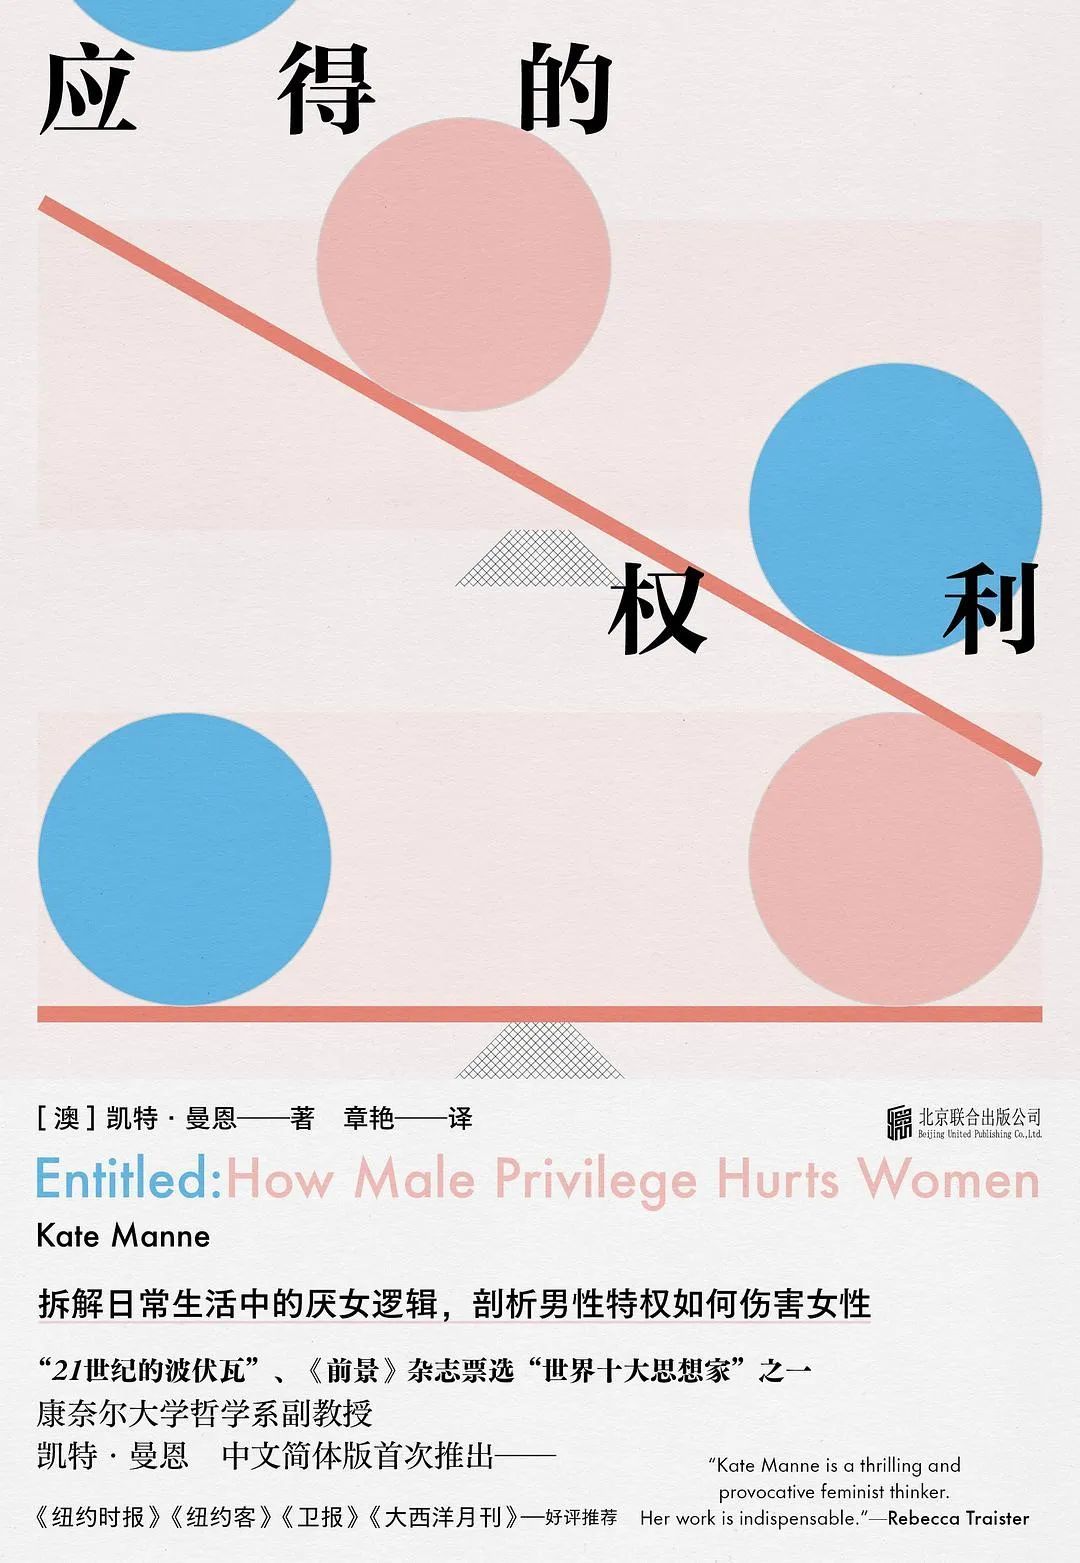 《应得的权利》，[澳]凯特·曼恩著，章艳译，明室Lucida | 北京联合出版公司，2022年5月。